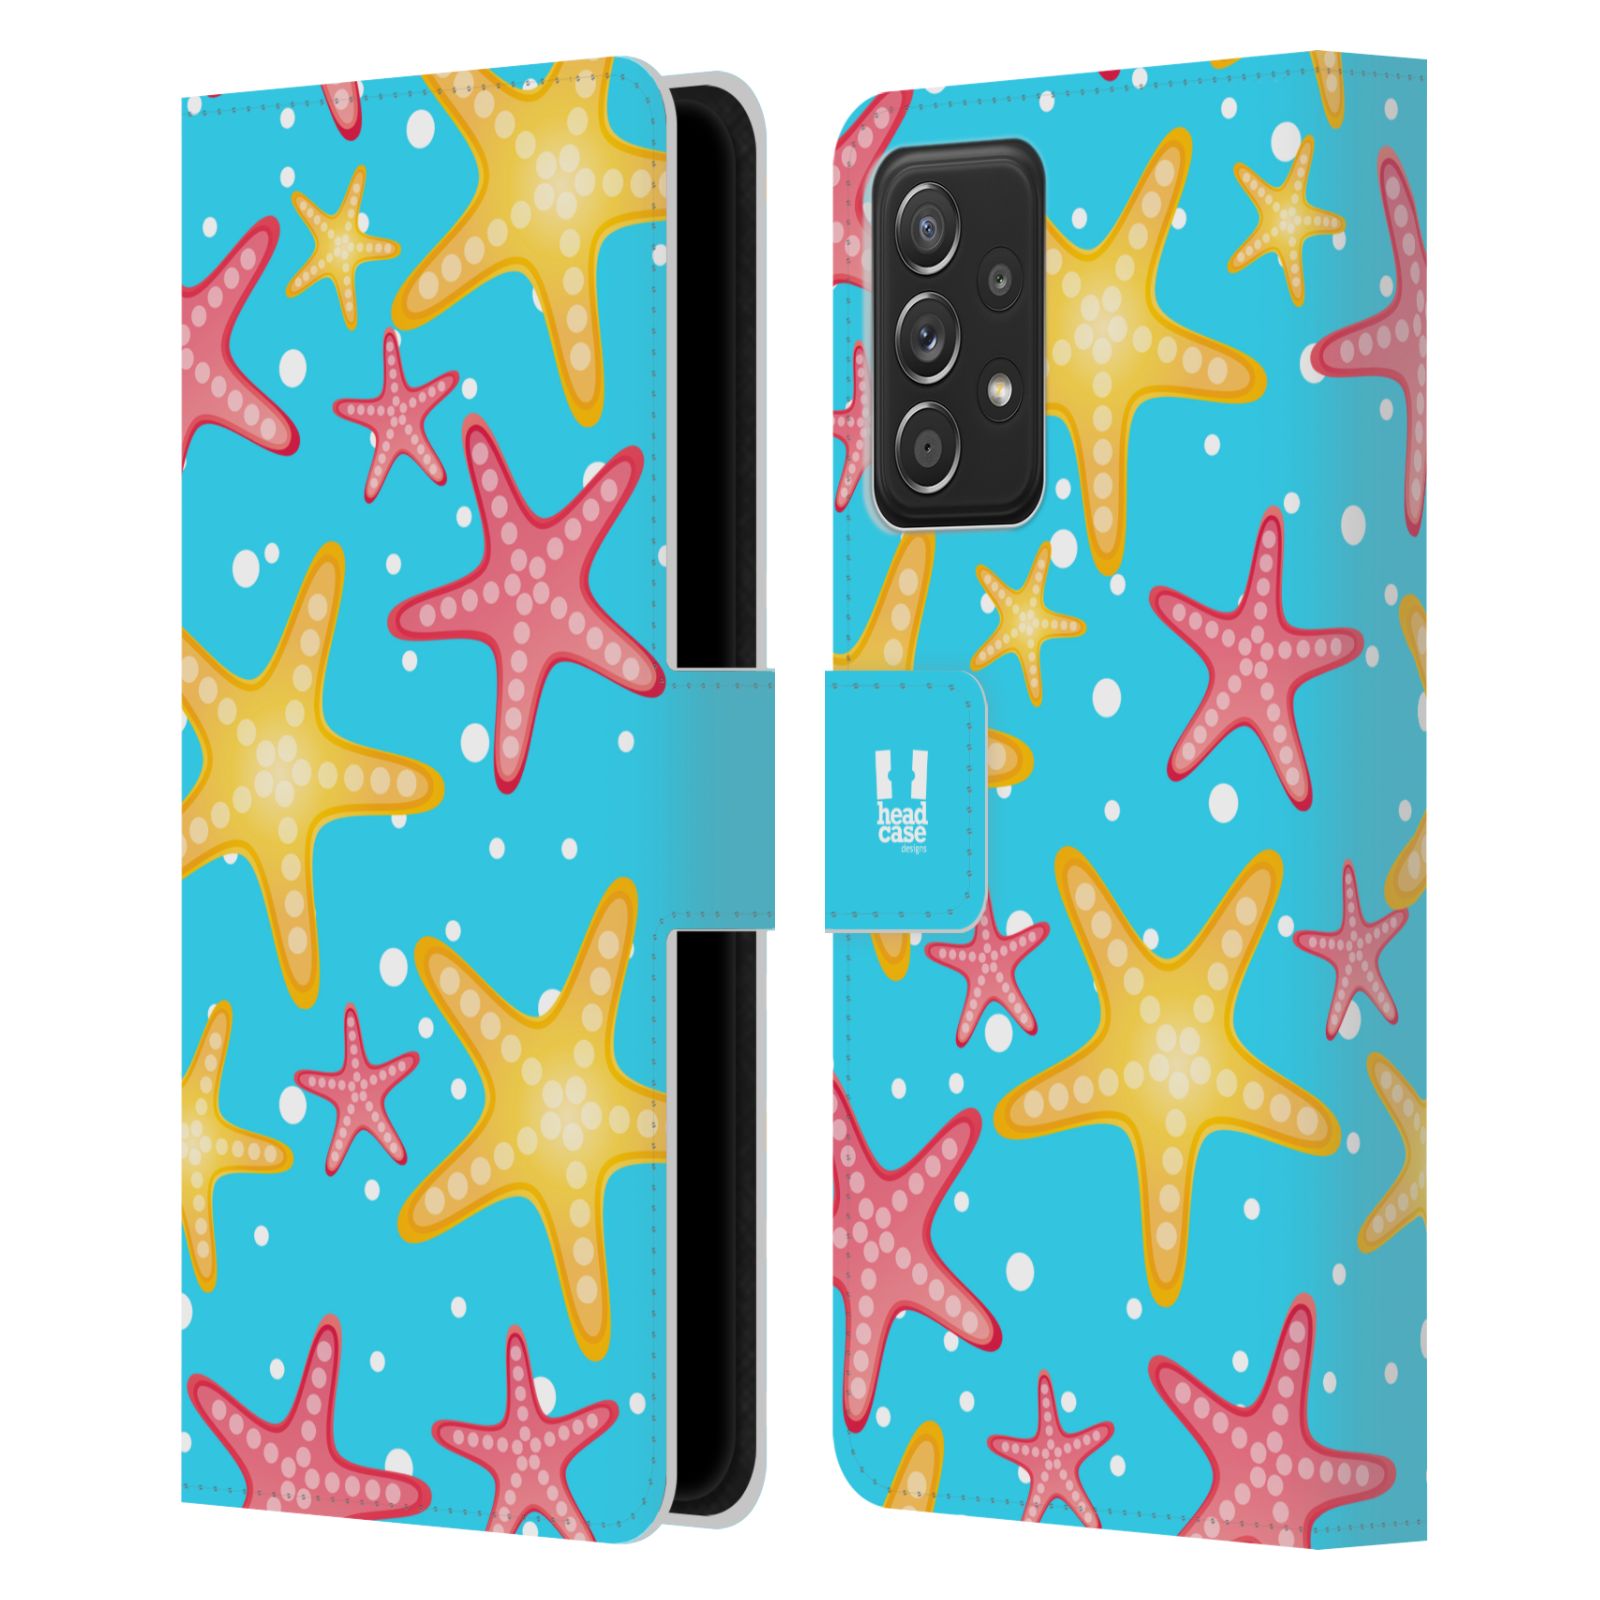 Pouzdro pro mobil Samsung Galaxy A52 / A52 5G / A52s 5G - HEAD CASE - Mořský vzor - barevné hvězdy